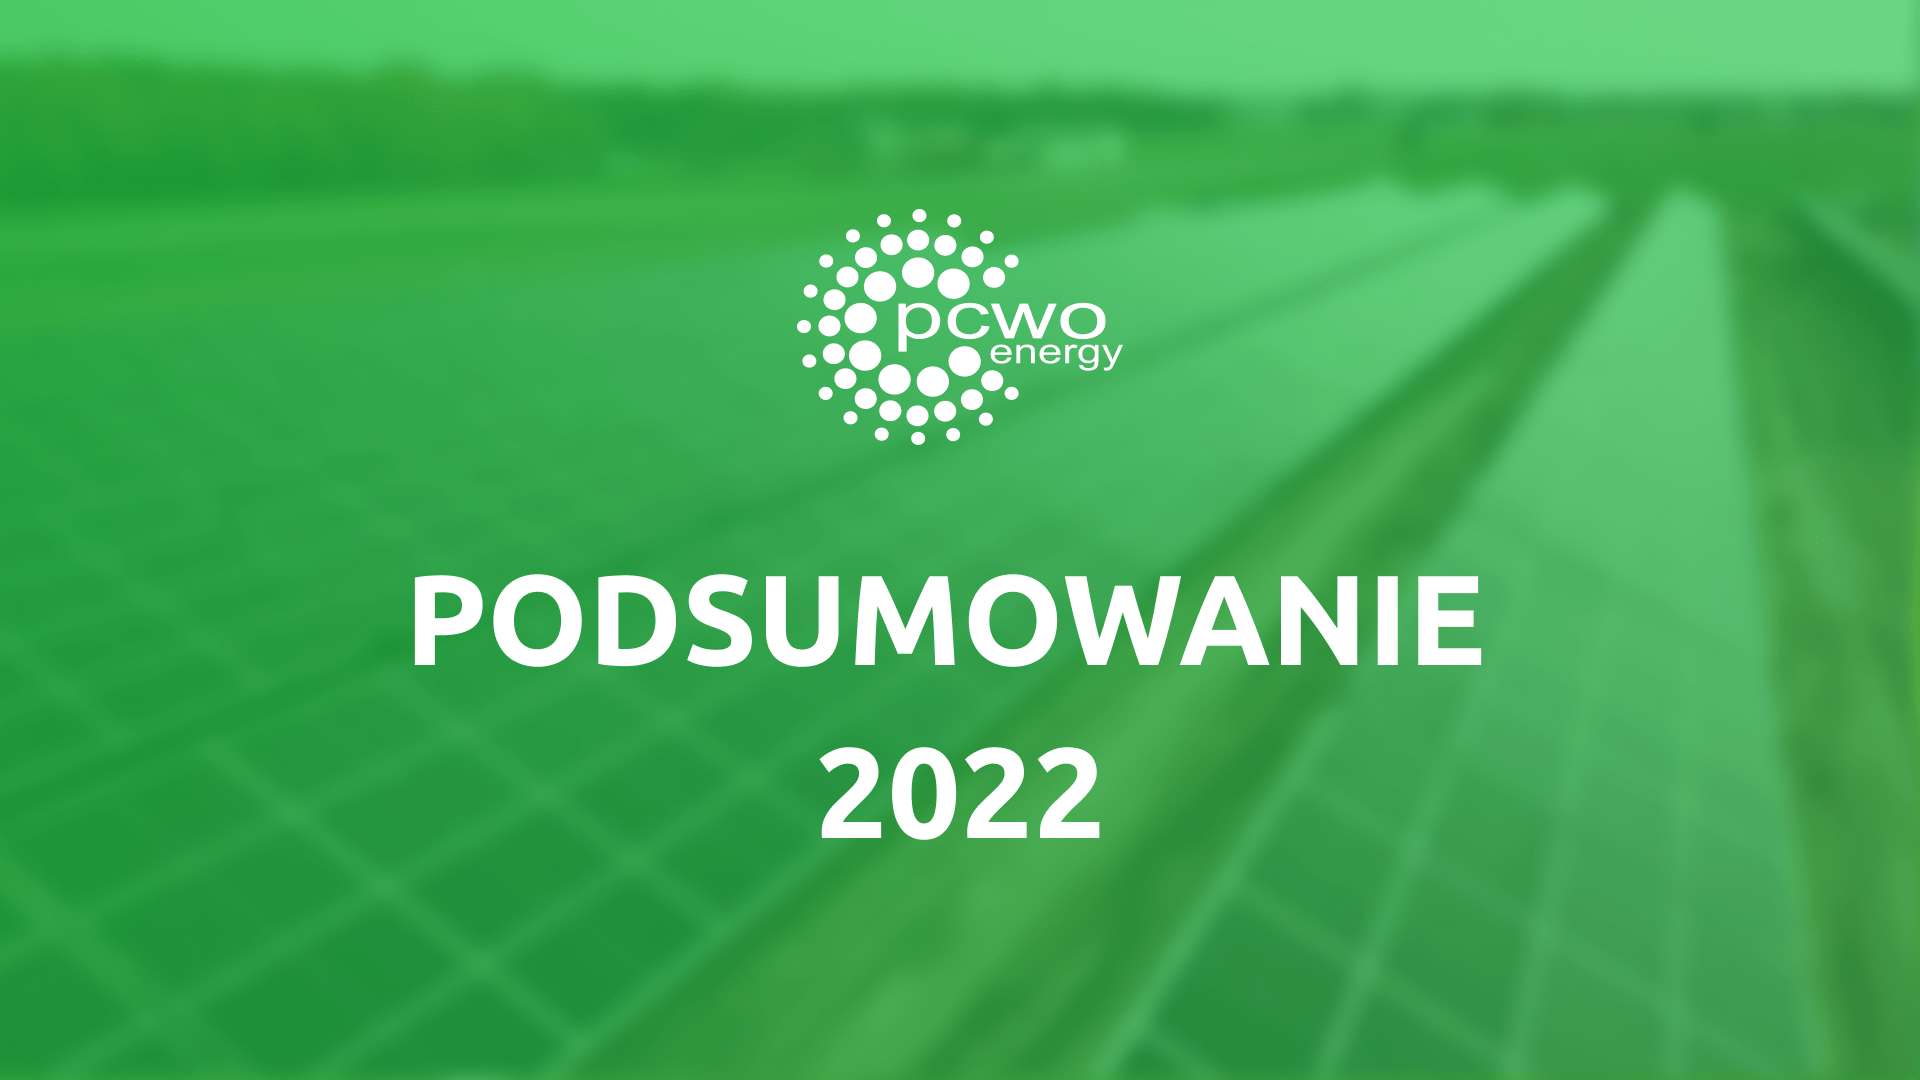 Cover Image for Podsumowanie roku 2022